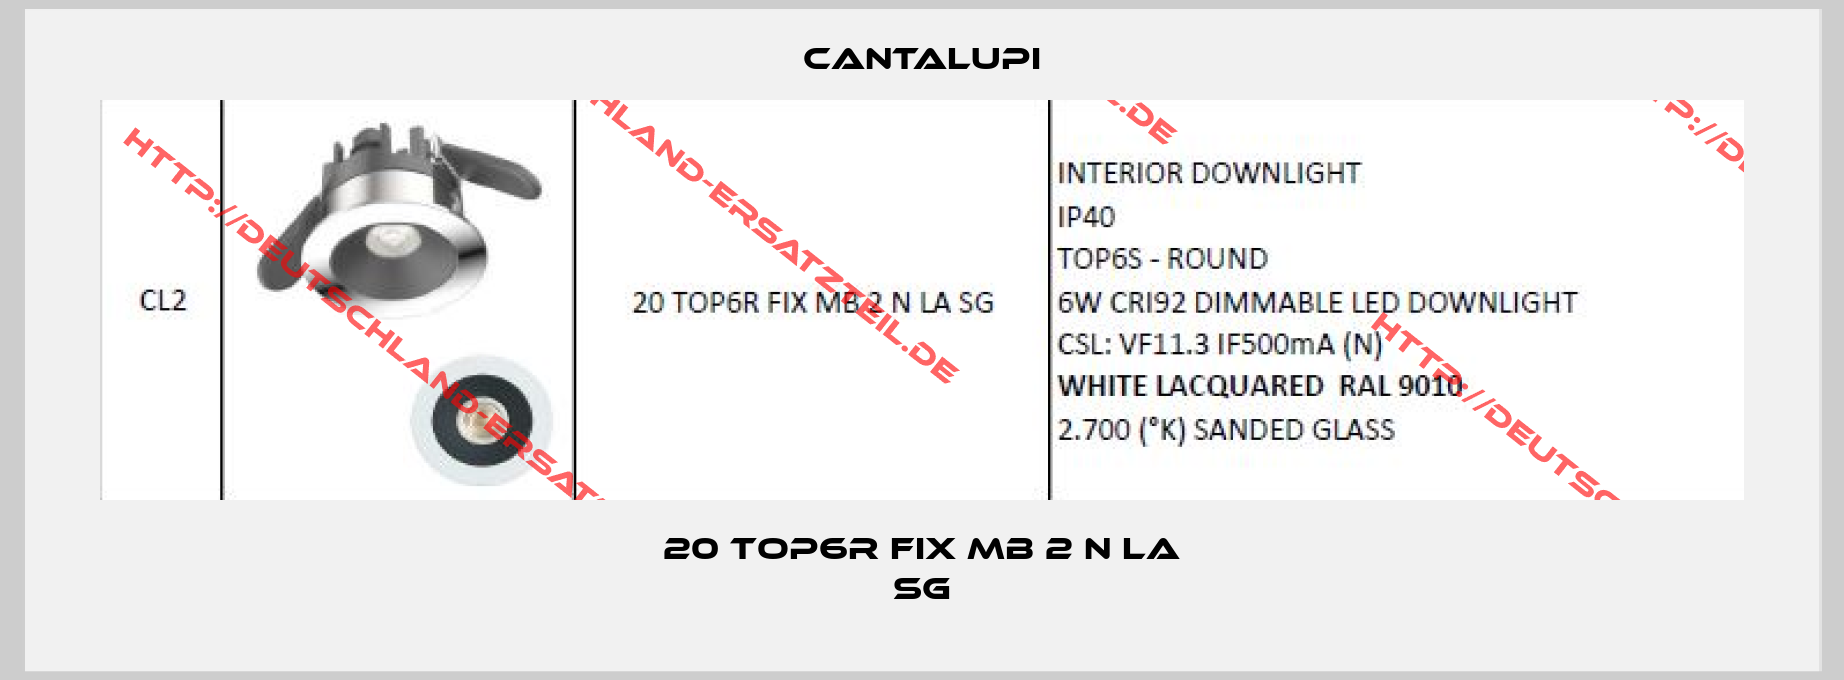 CANTALUPI-20 TOP6R FIX MB 2 N LA SG